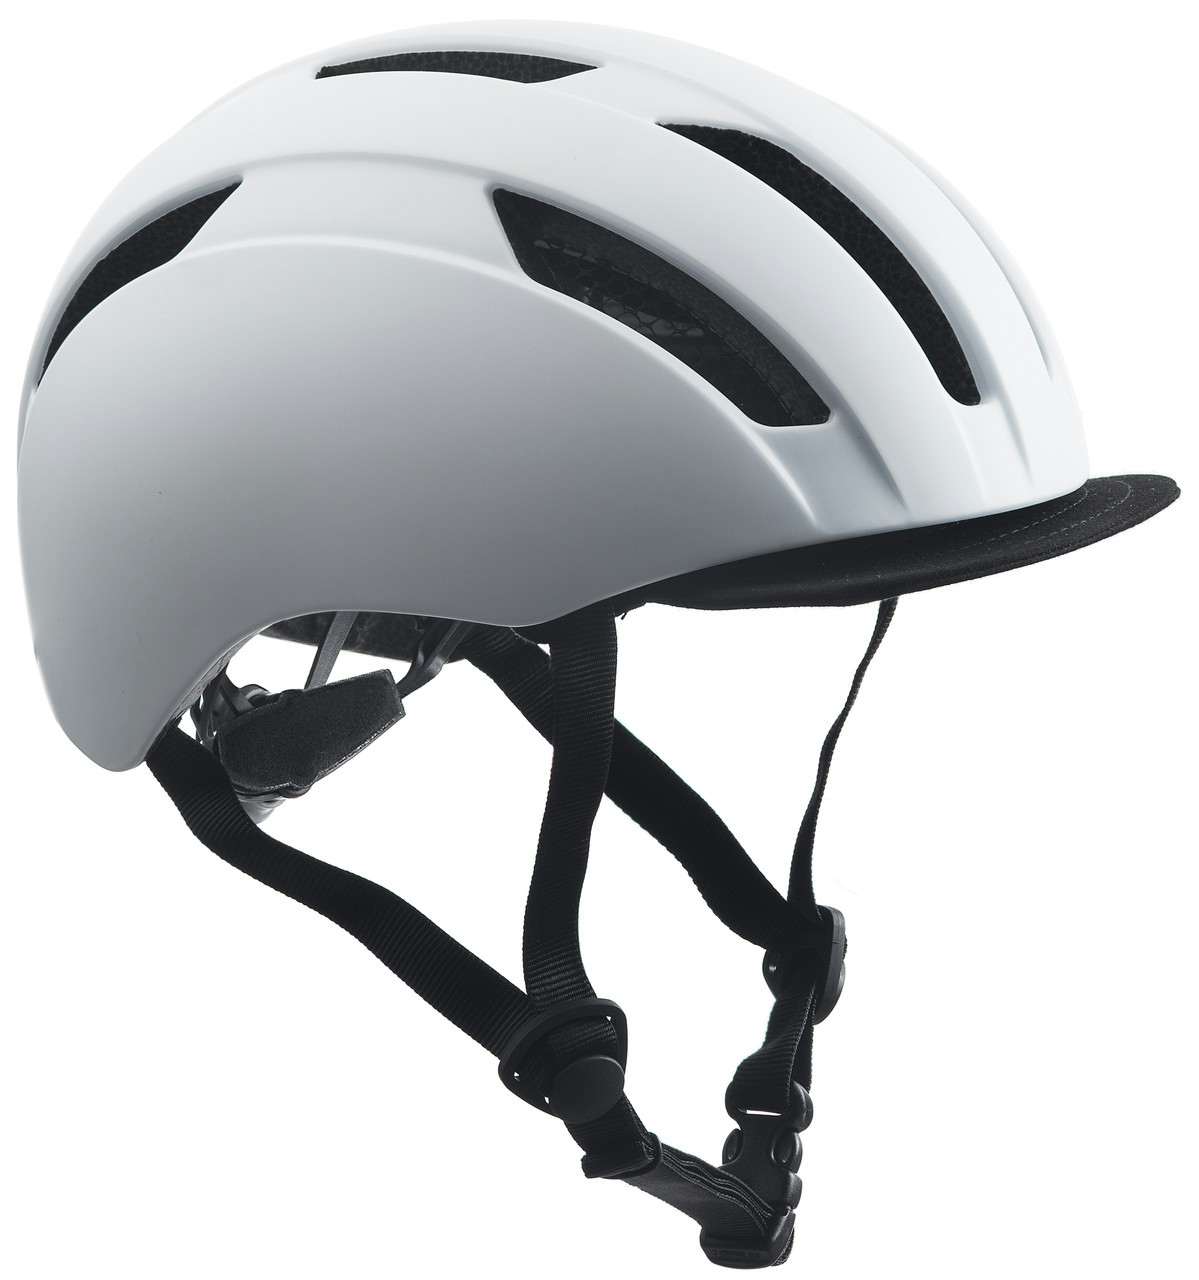 Skyway Helmet White/Black